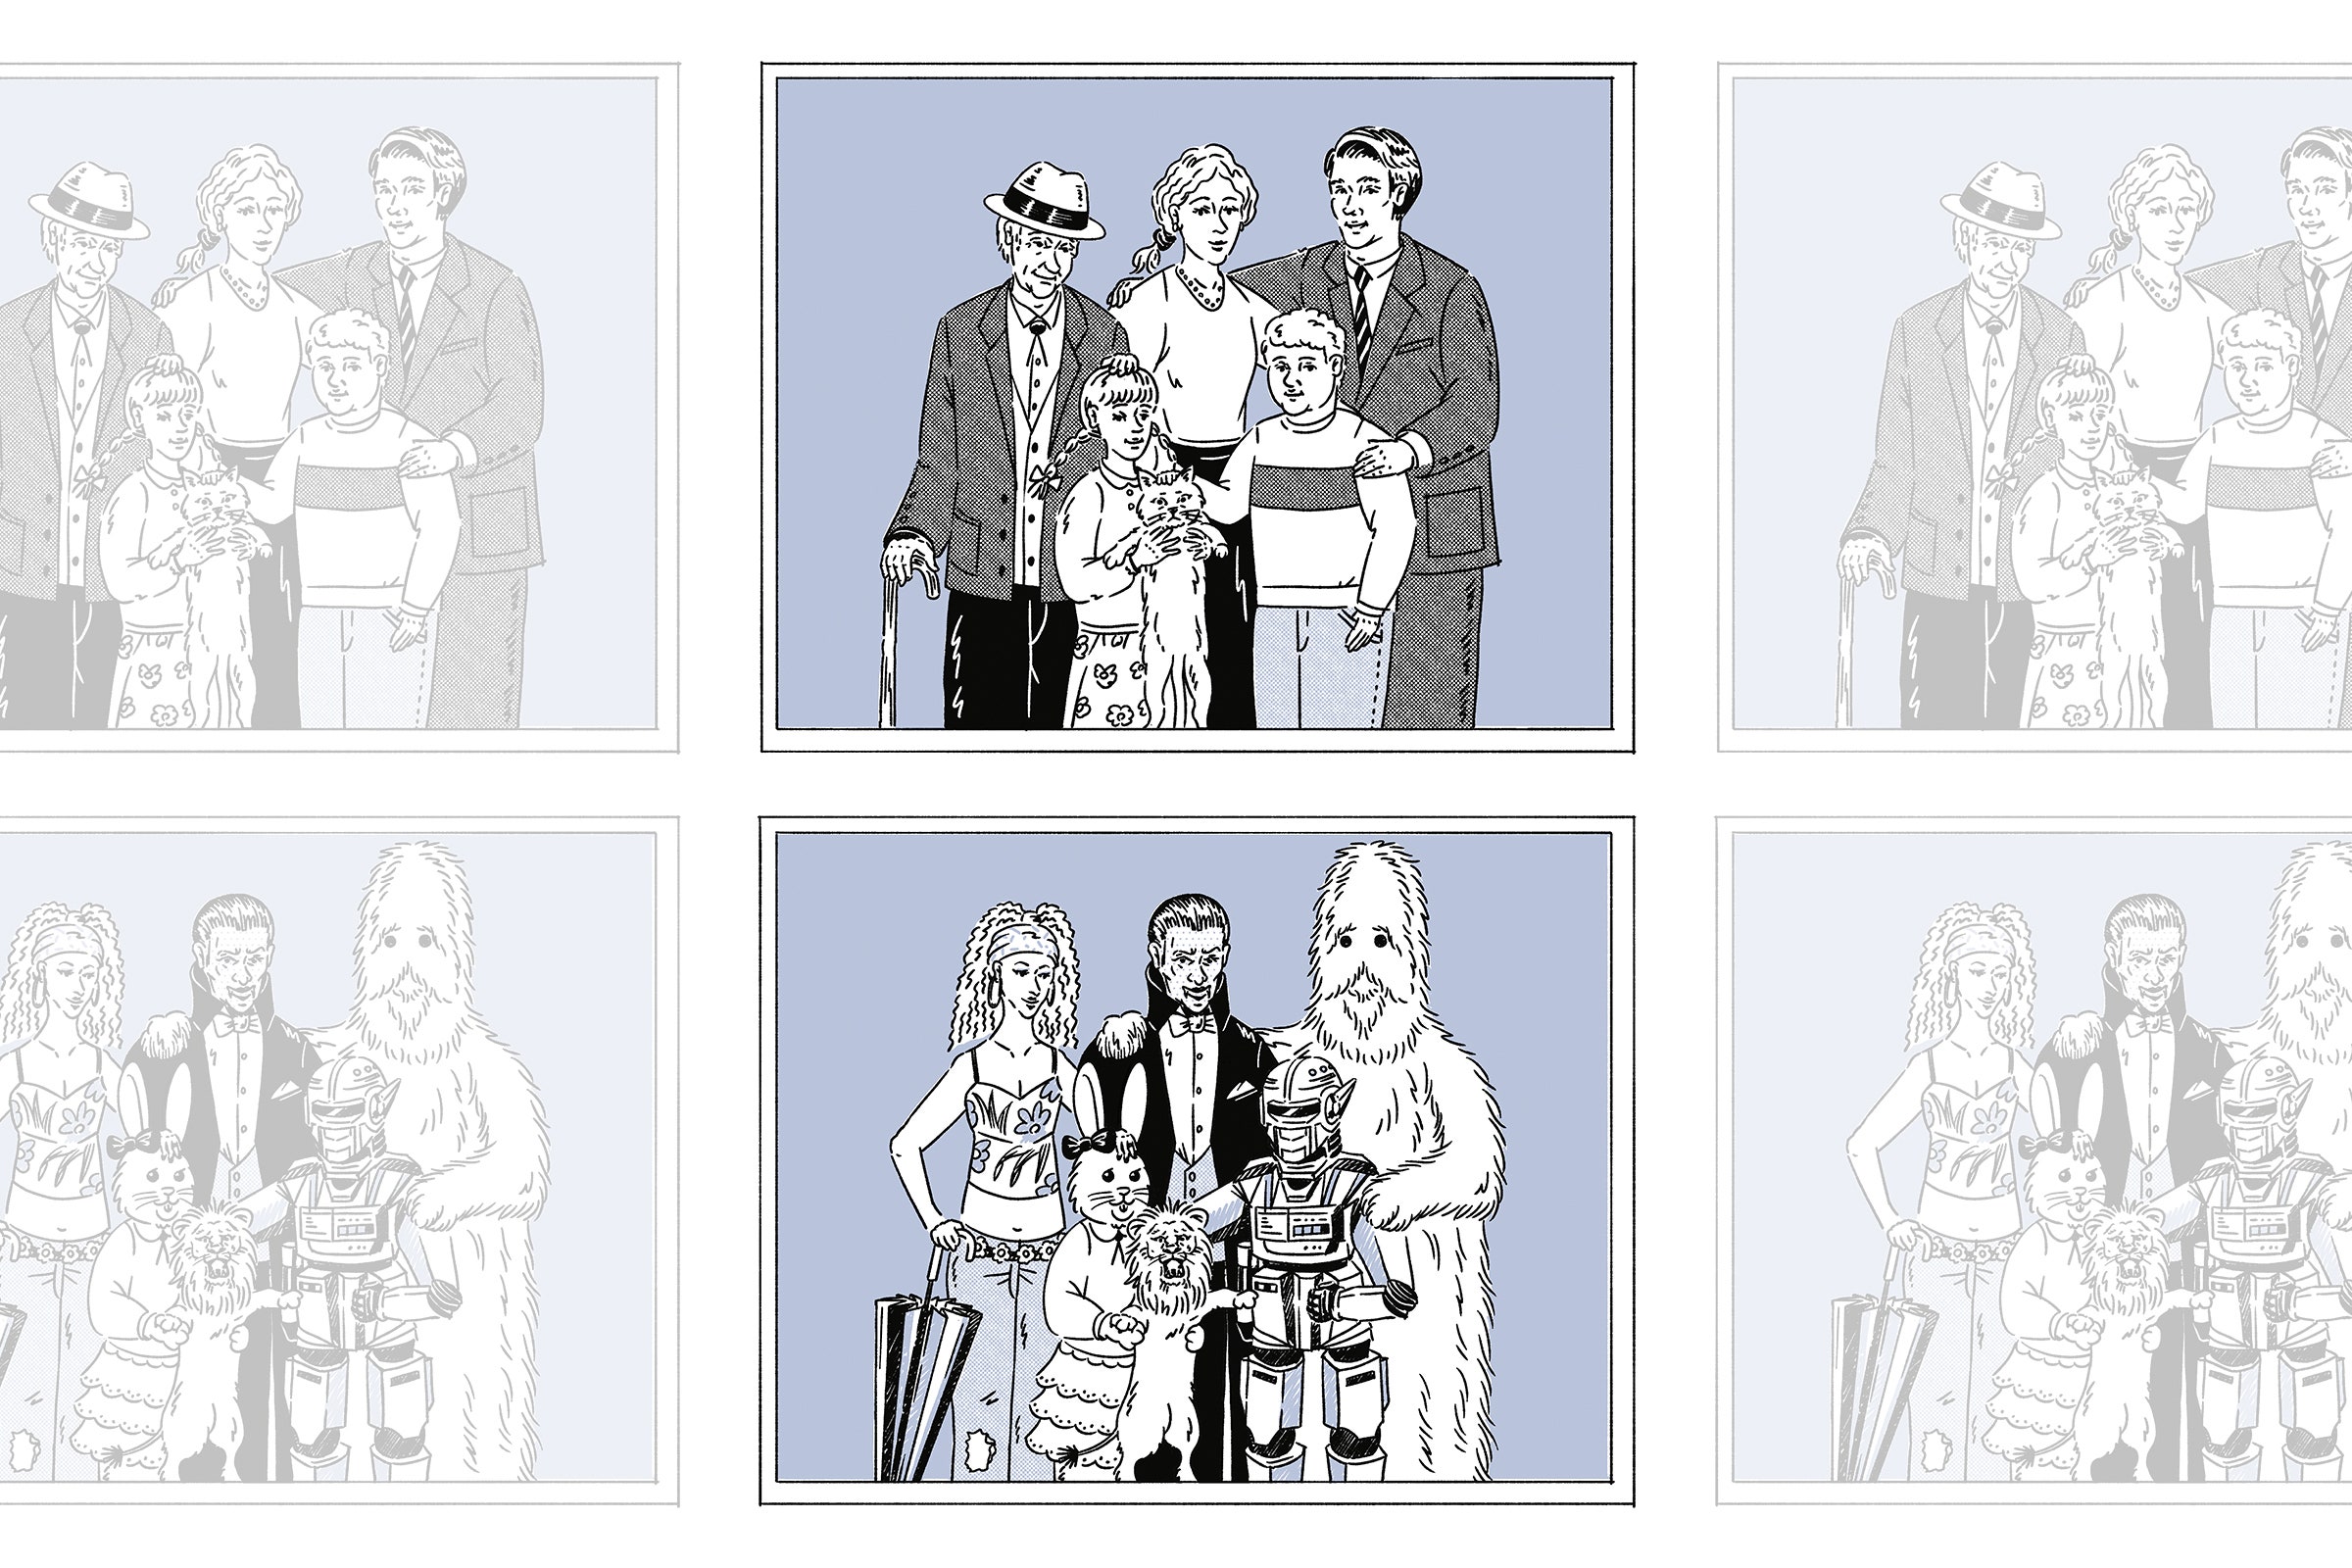 Uma ilustração cômica de um retrato de família, que mostra cinco pessoas vestidas com roupas comuns e um segundo retrato.